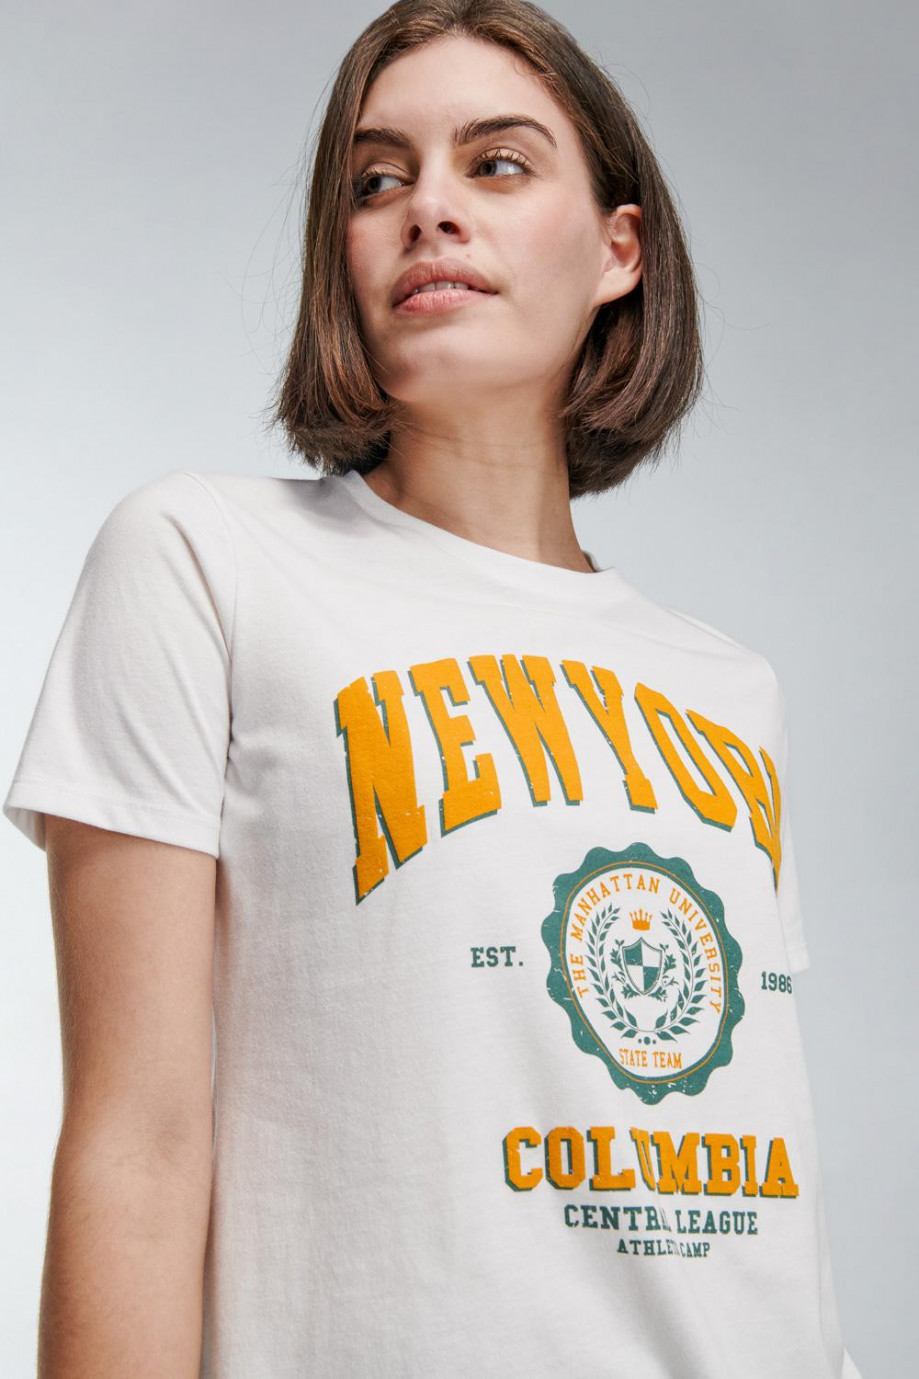 Camiseta crema clara cuello redondo con estampado college de New York